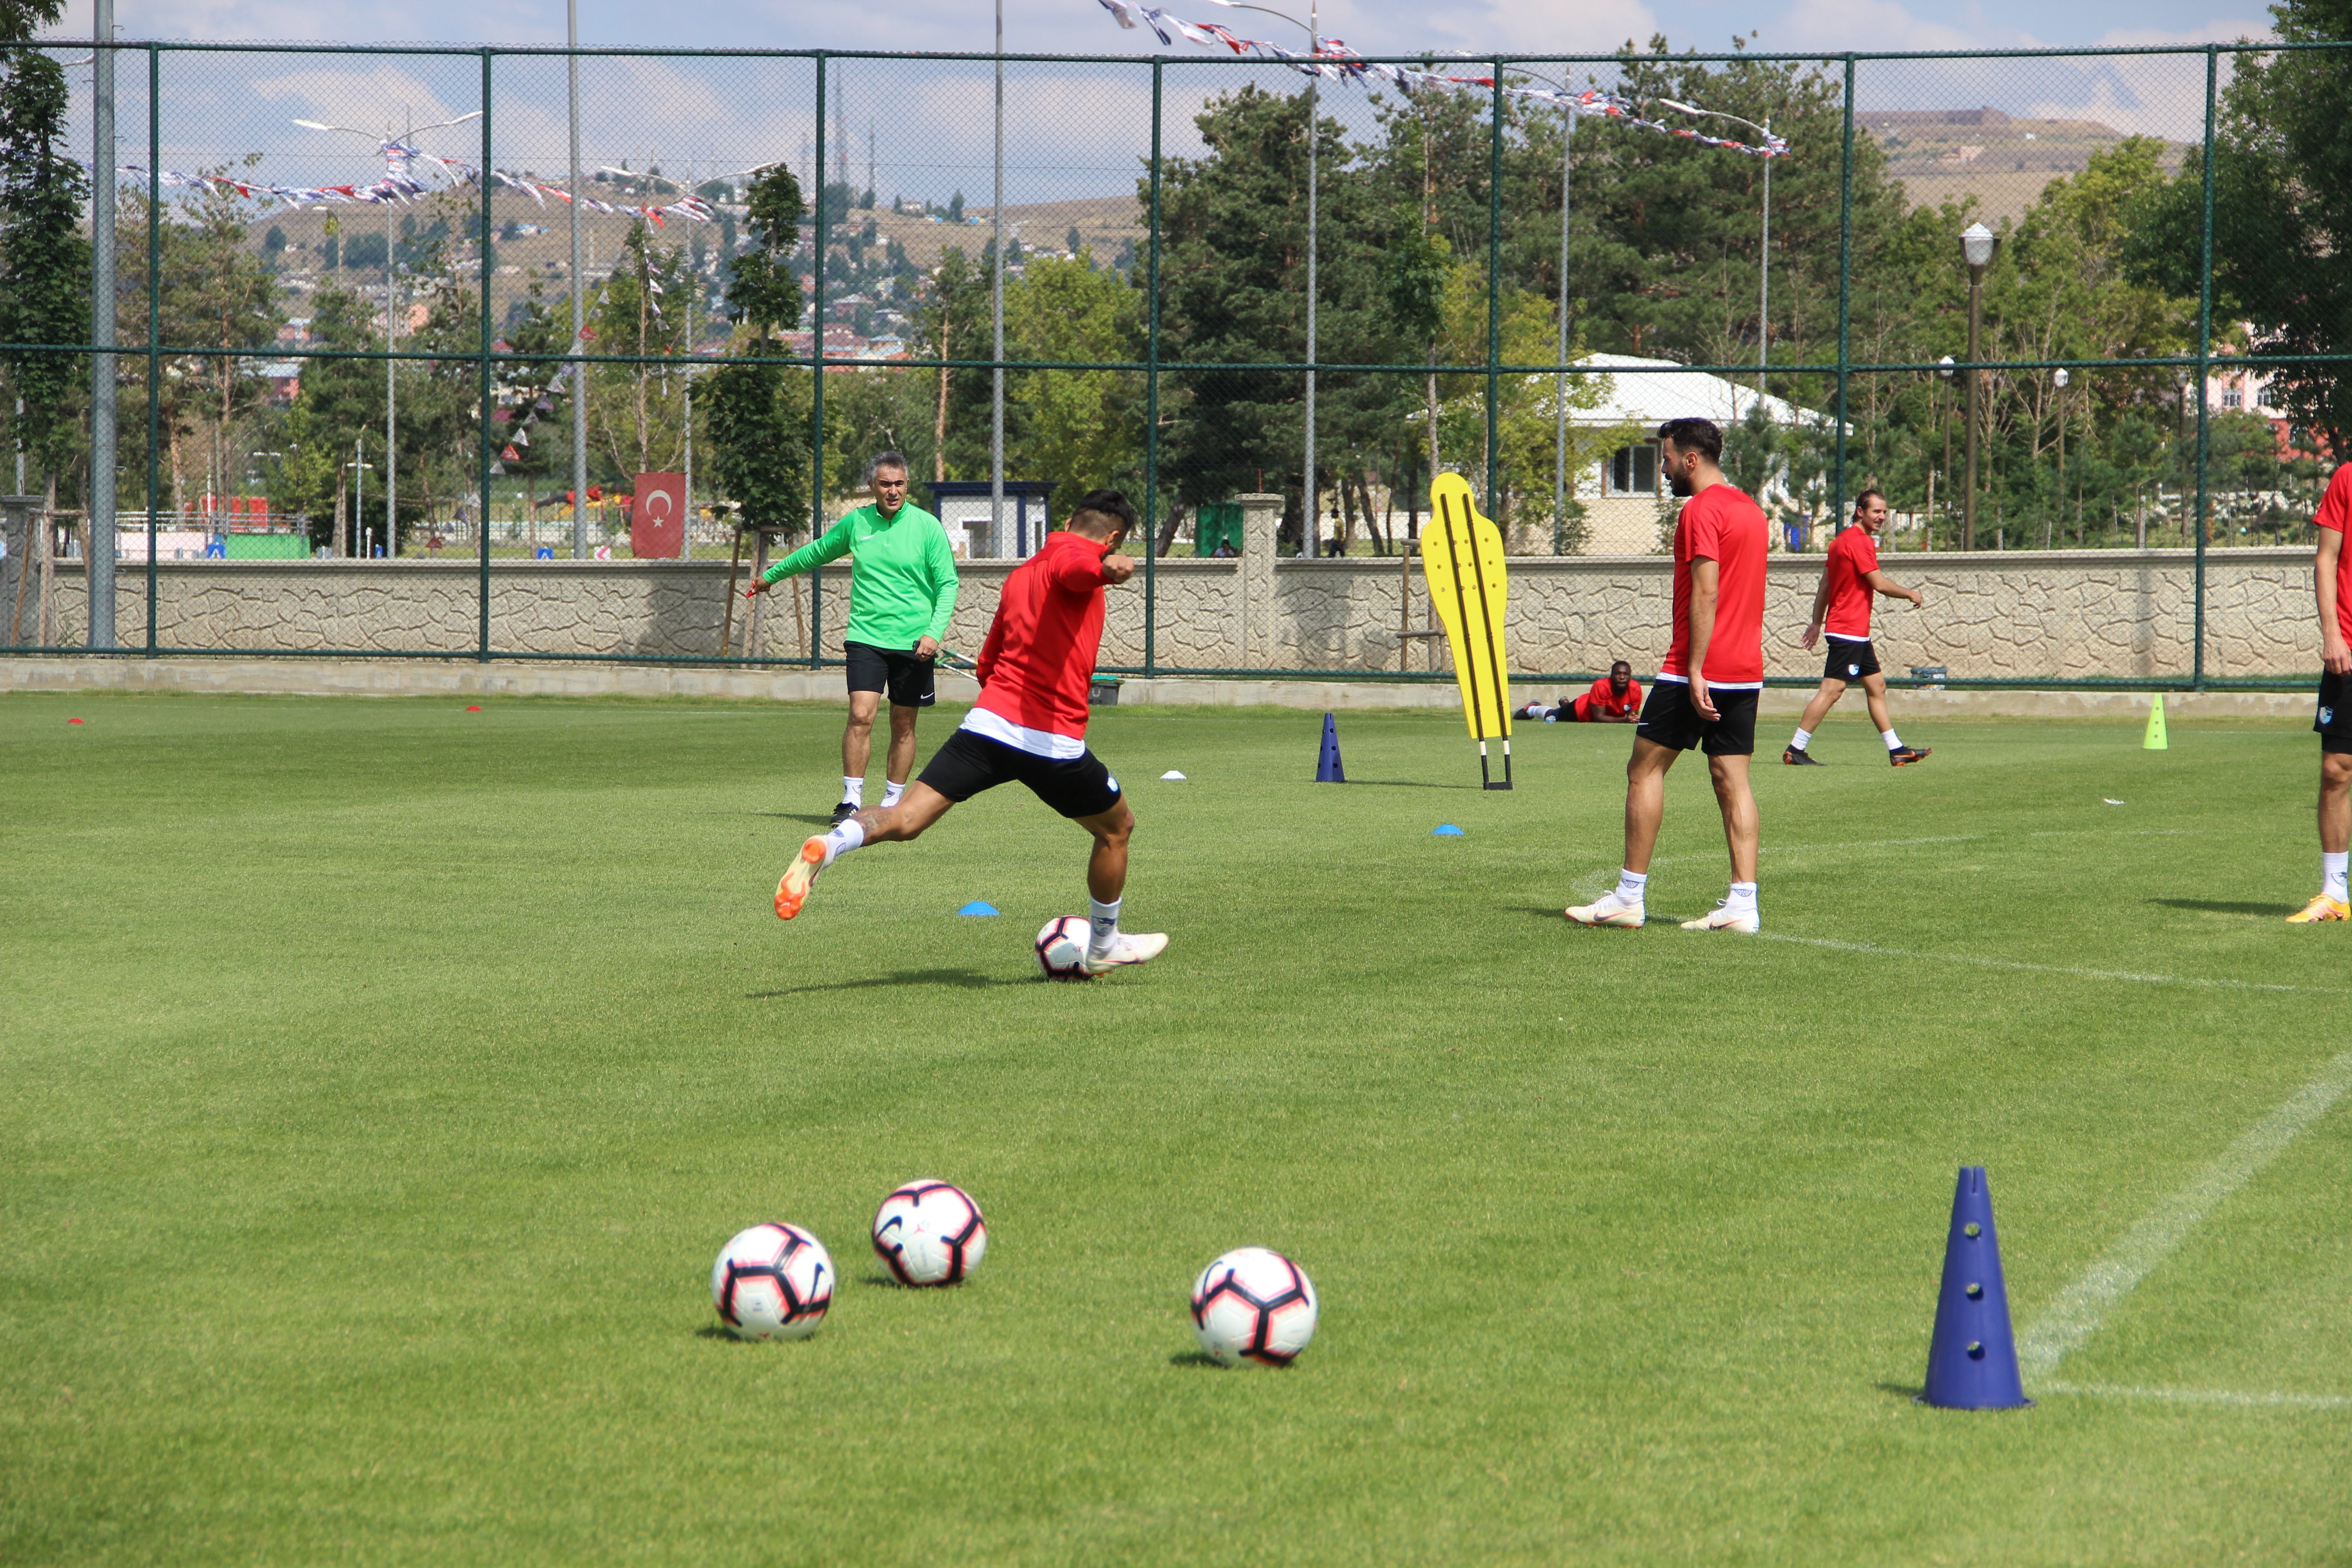 B.B. Erzurumspor Atiker Konyaspor maçı hazırlıklarını tamamladı